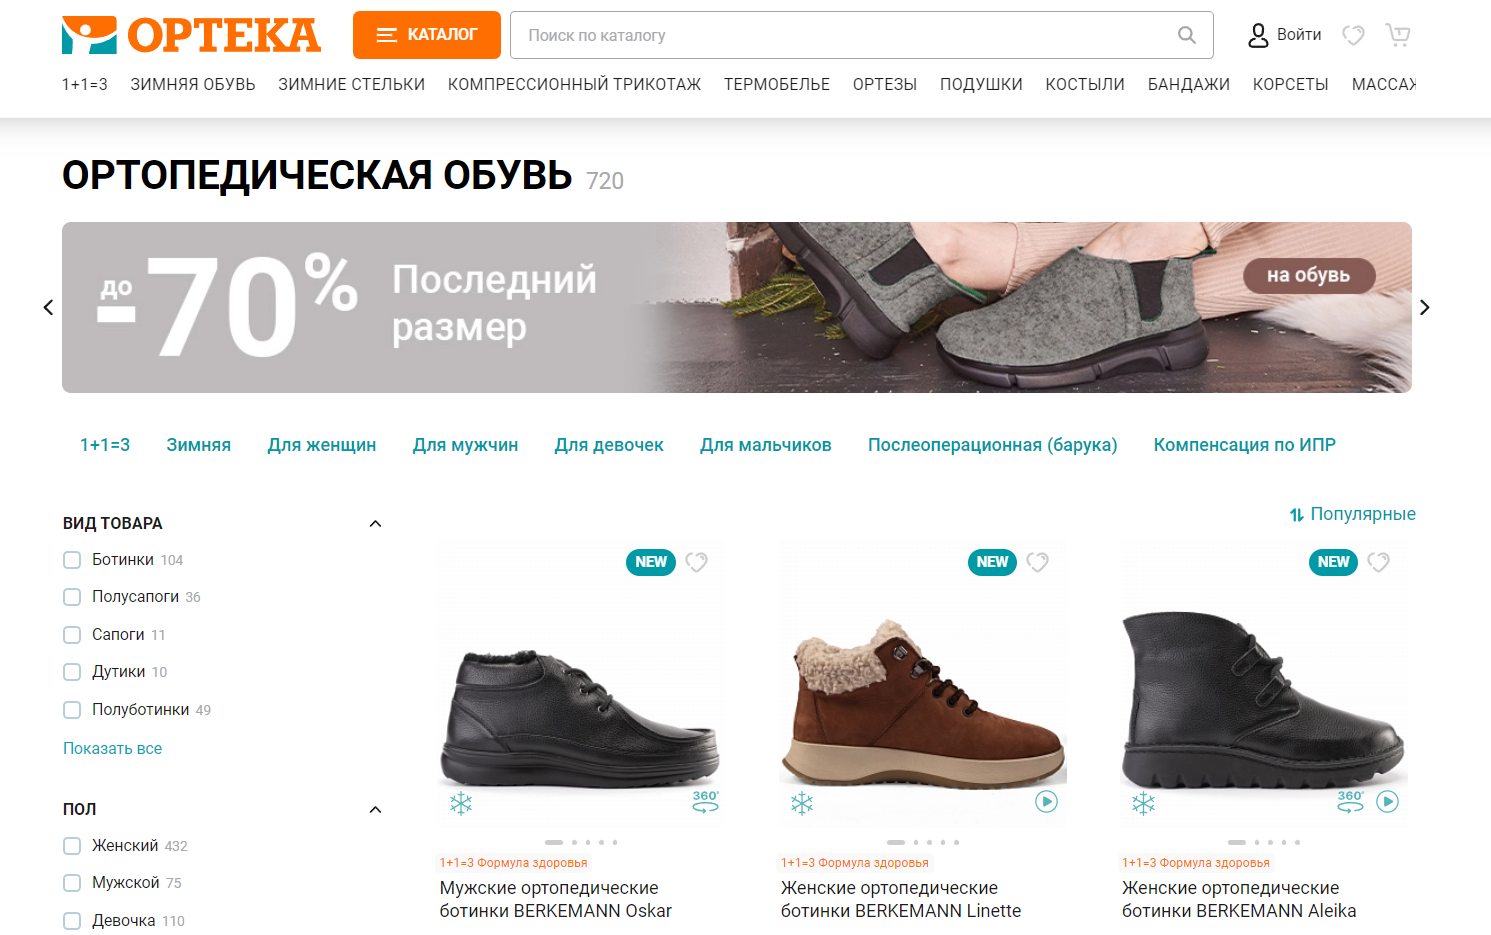 Обувь интернет магазин самара. Обувь России. Обувь раскрываемая. Размеры обуви.